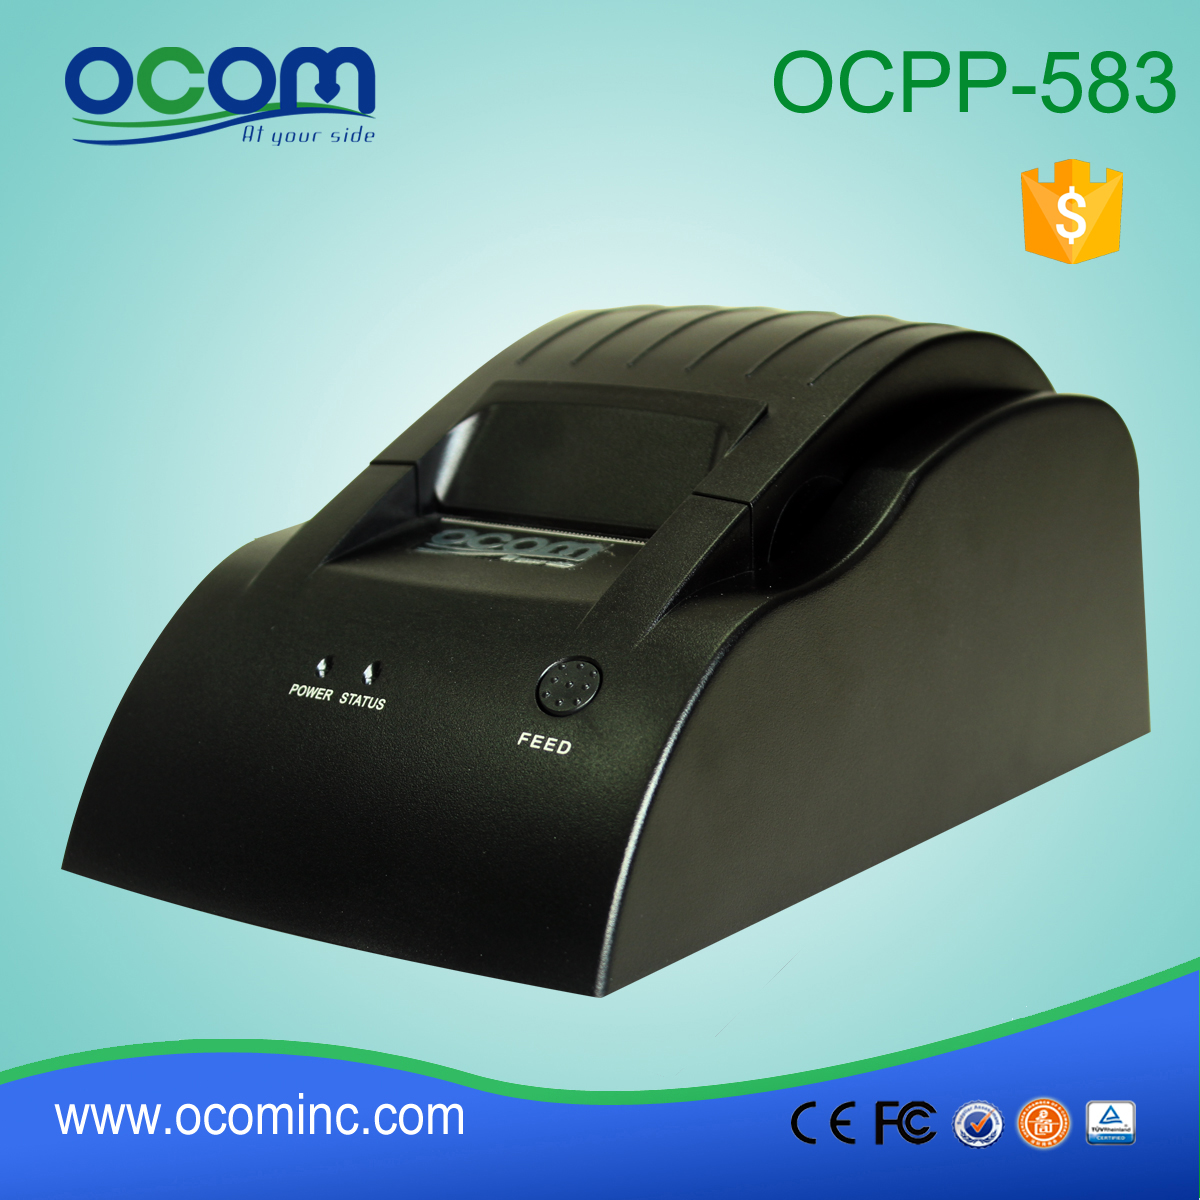 OCPP-583-R 58mm POS Termiczna drukarka biletów do odbioru biletów Port RS232